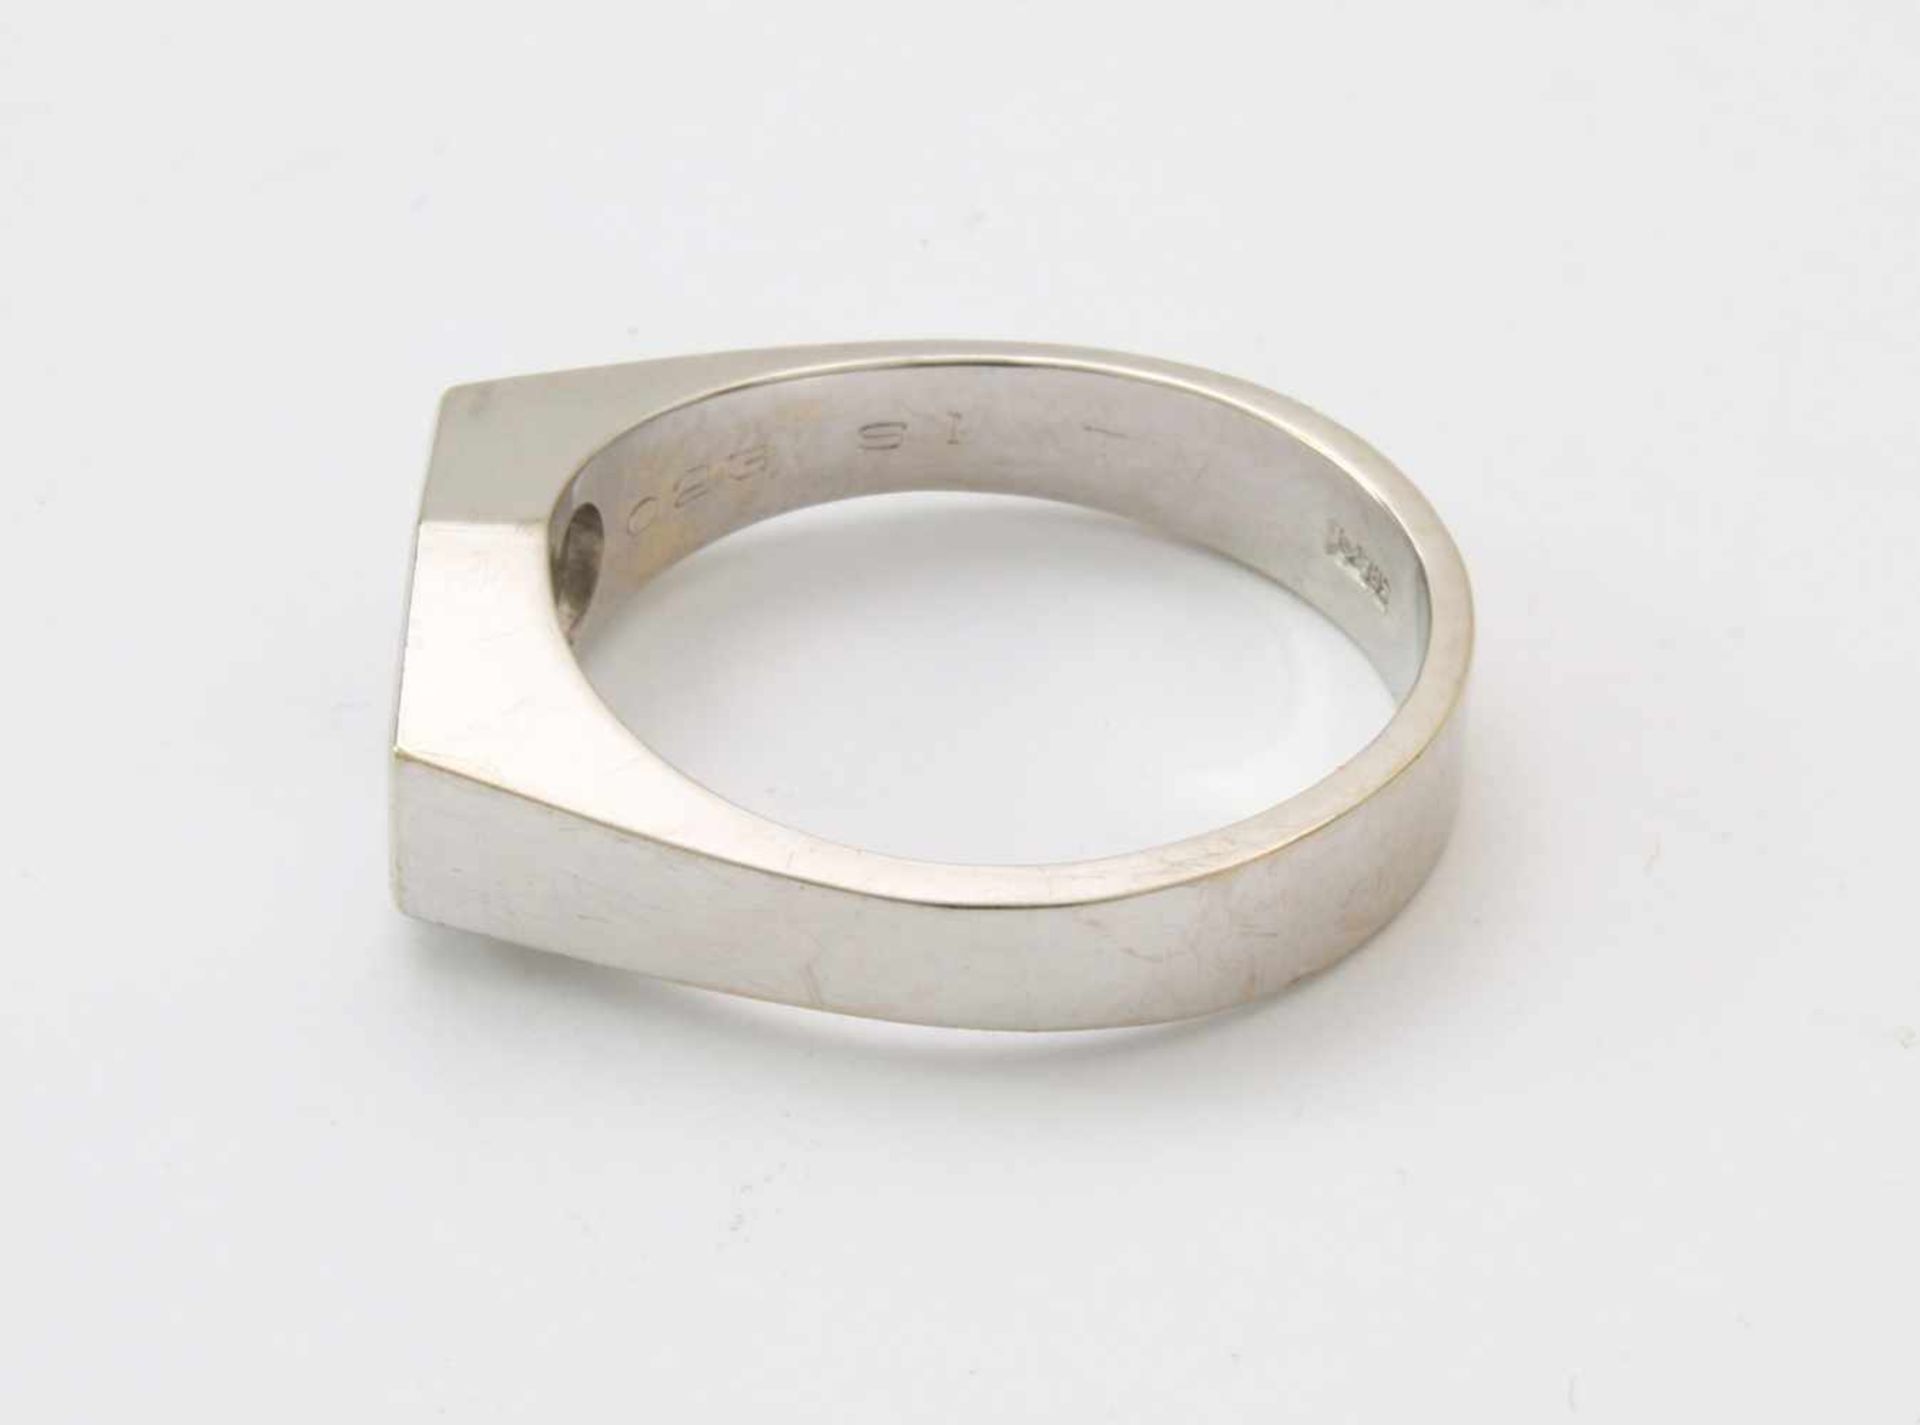 Weißgold-Ring mit Brillant SolitärWG 585, Brillant 0,23 ct., gute Qualität, tw/si, Ringgröße: 60, - Bild 3 aus 4